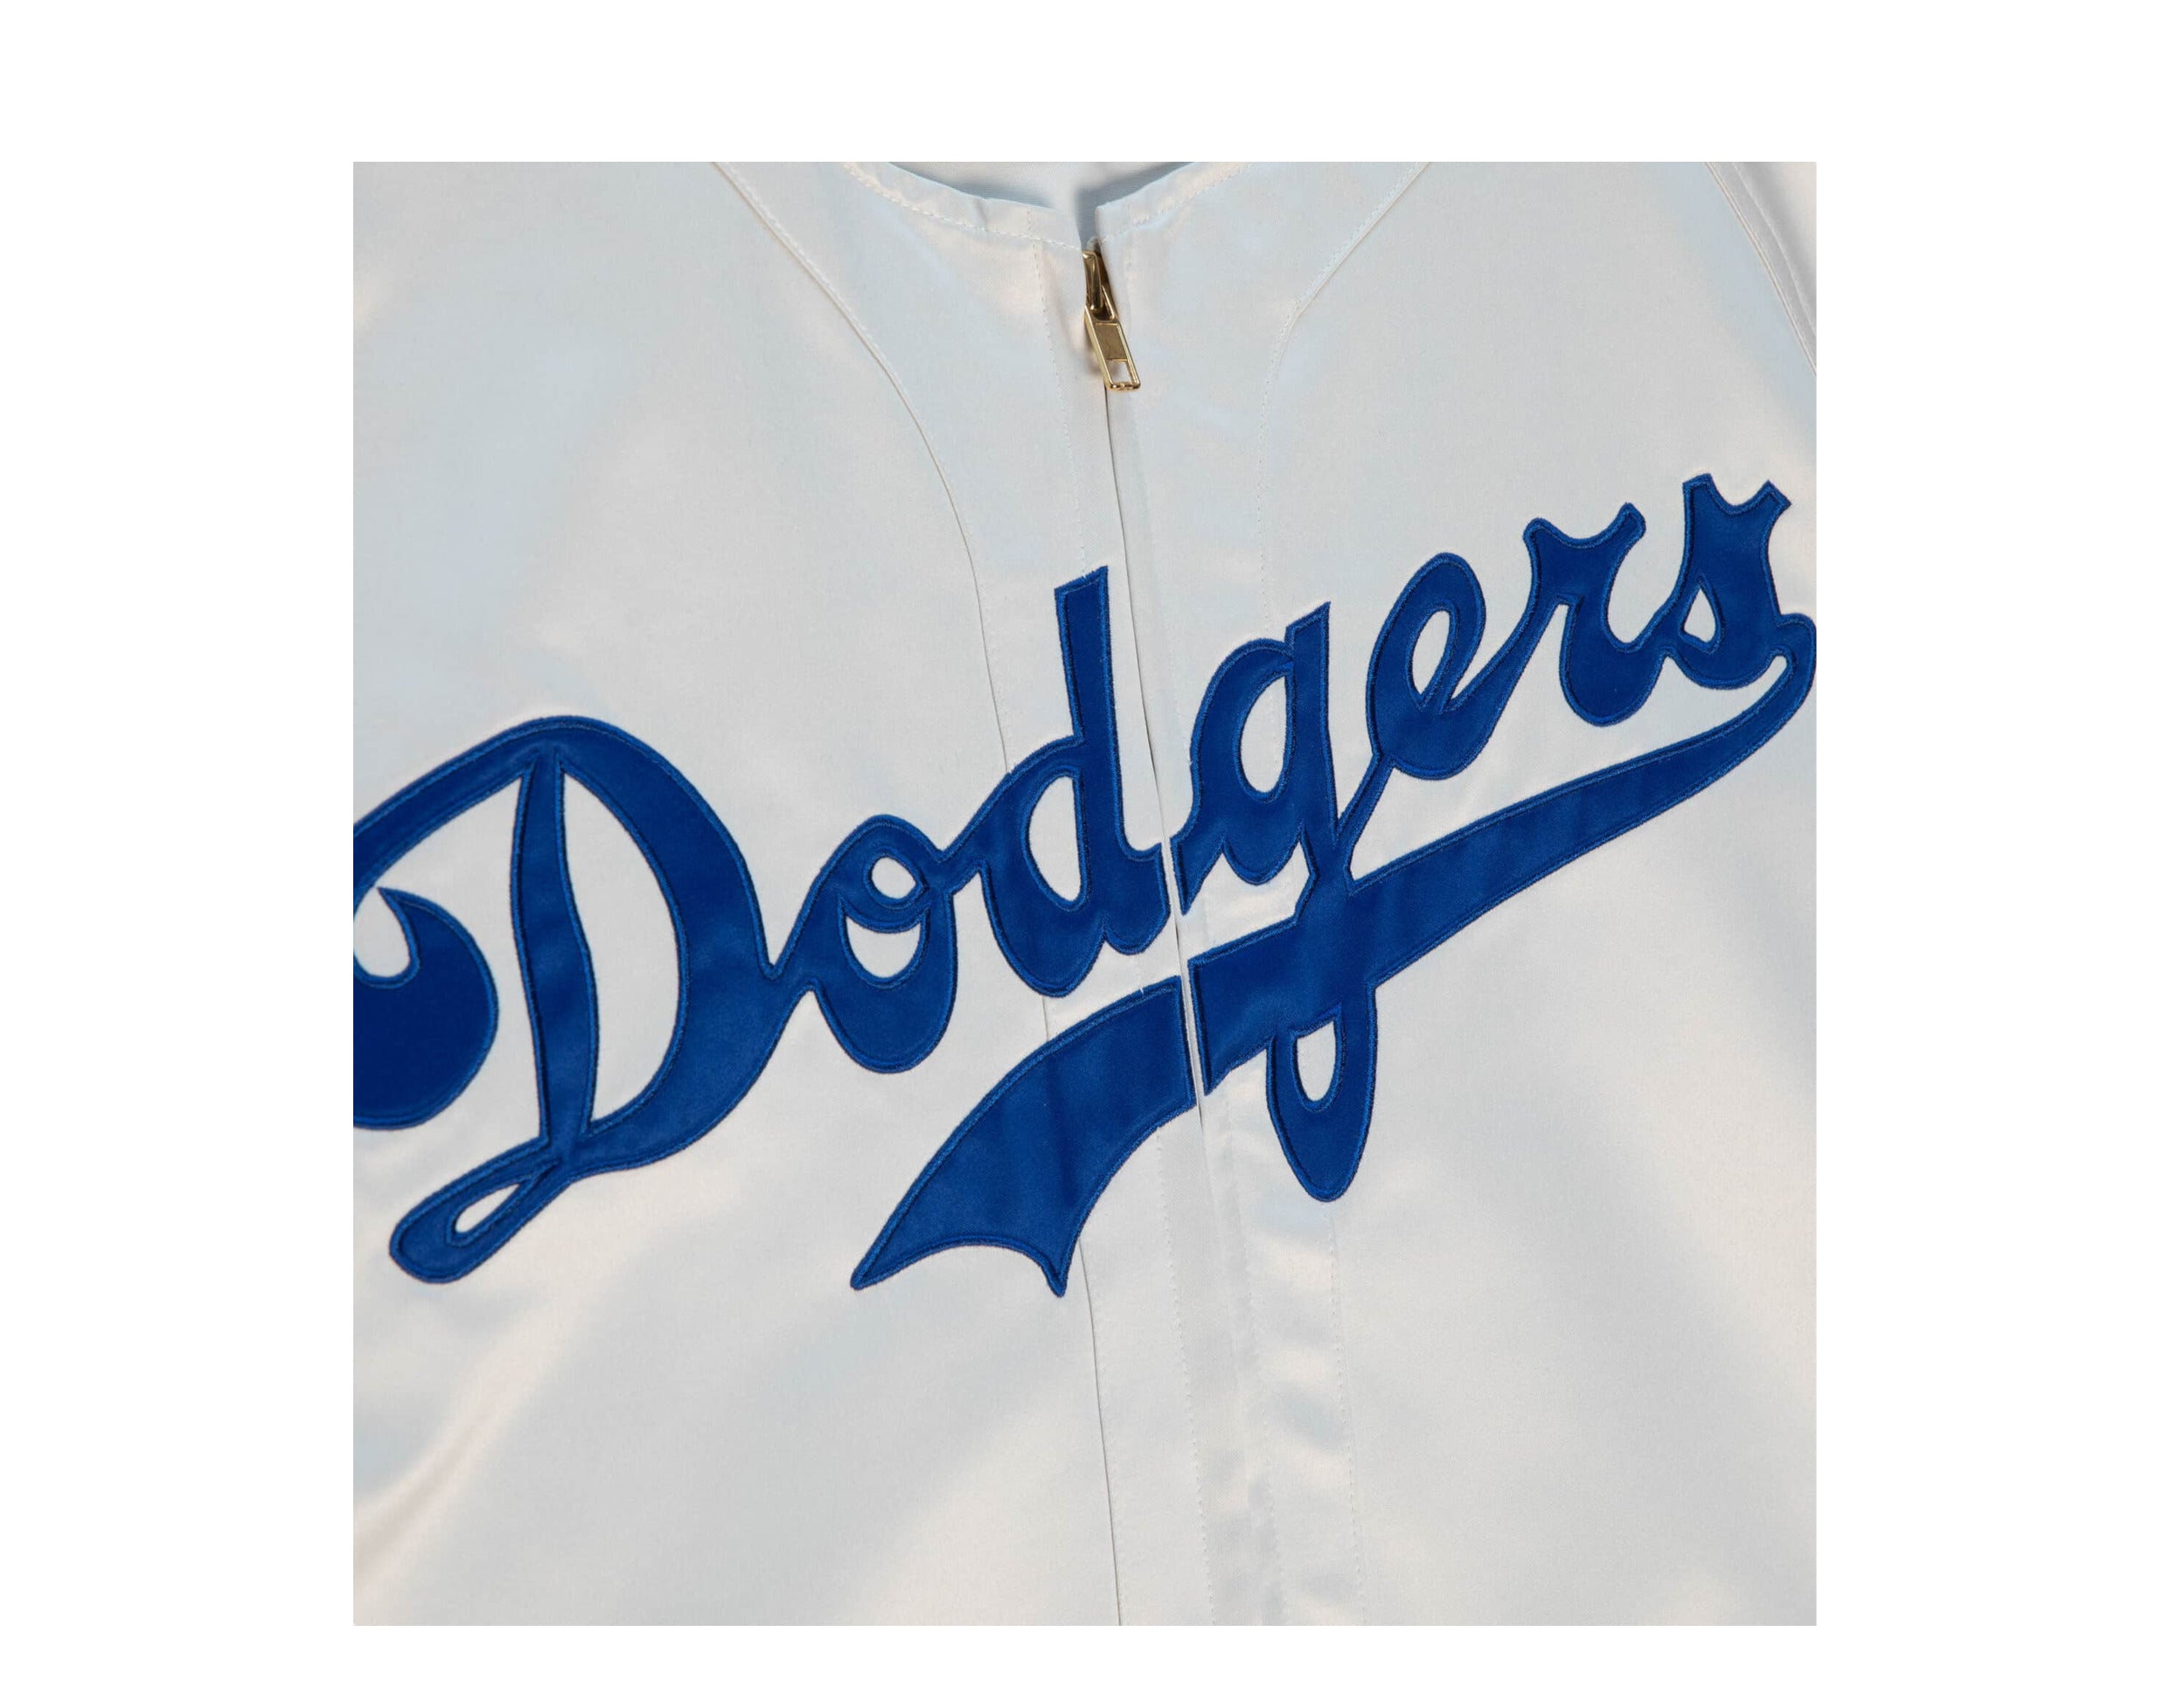 LA Kings x Dodgers Jersey Shirt